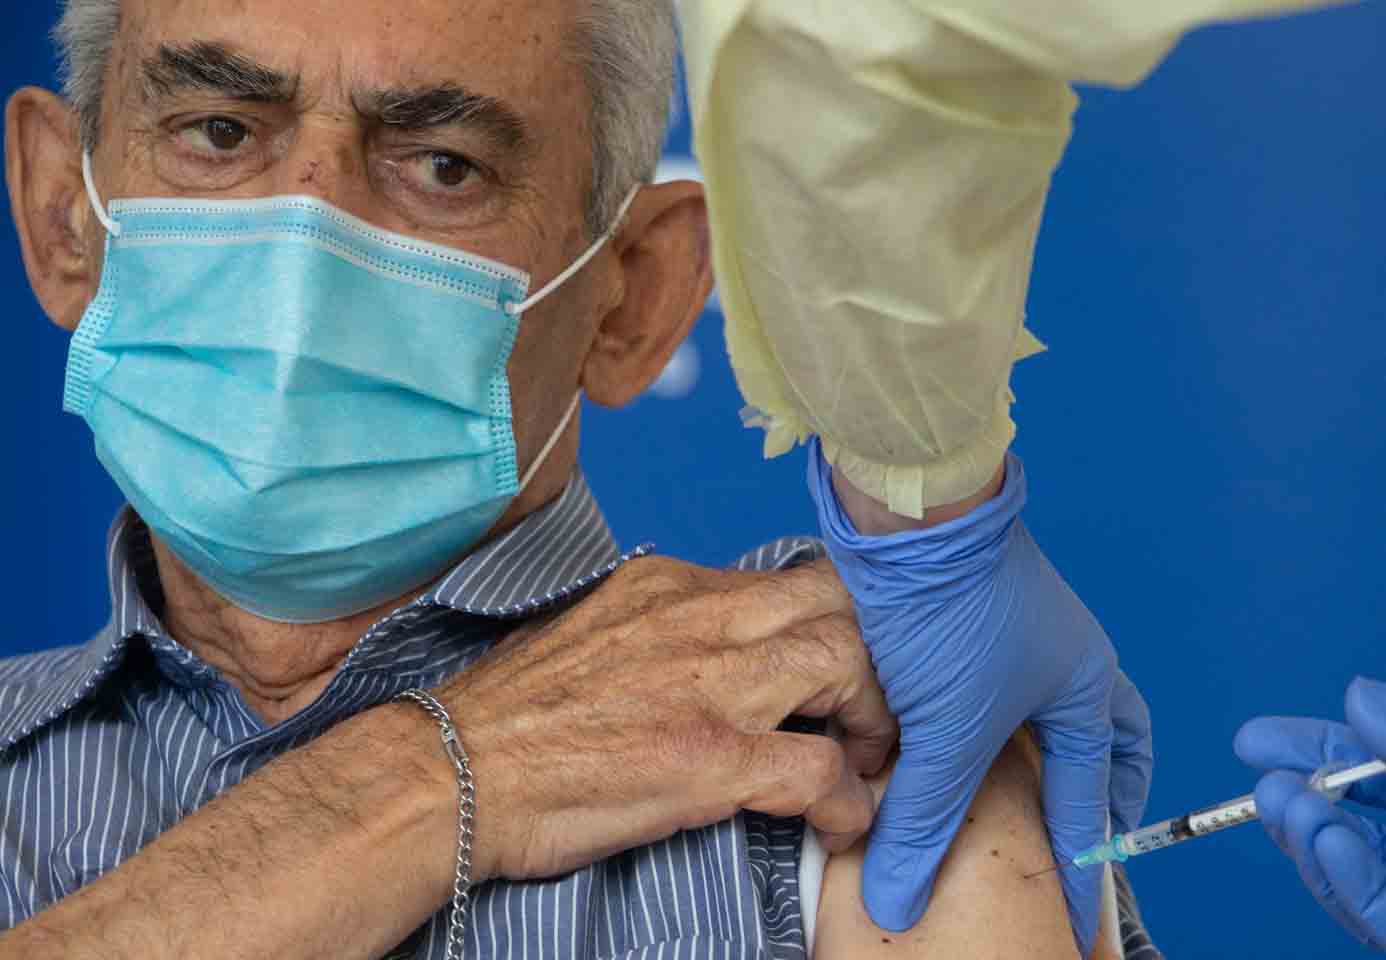 Με αισοδοξία για αντιμετώπιση της πανδημίας άρχισαν οι εμβολιασμοί στην Κύπρο